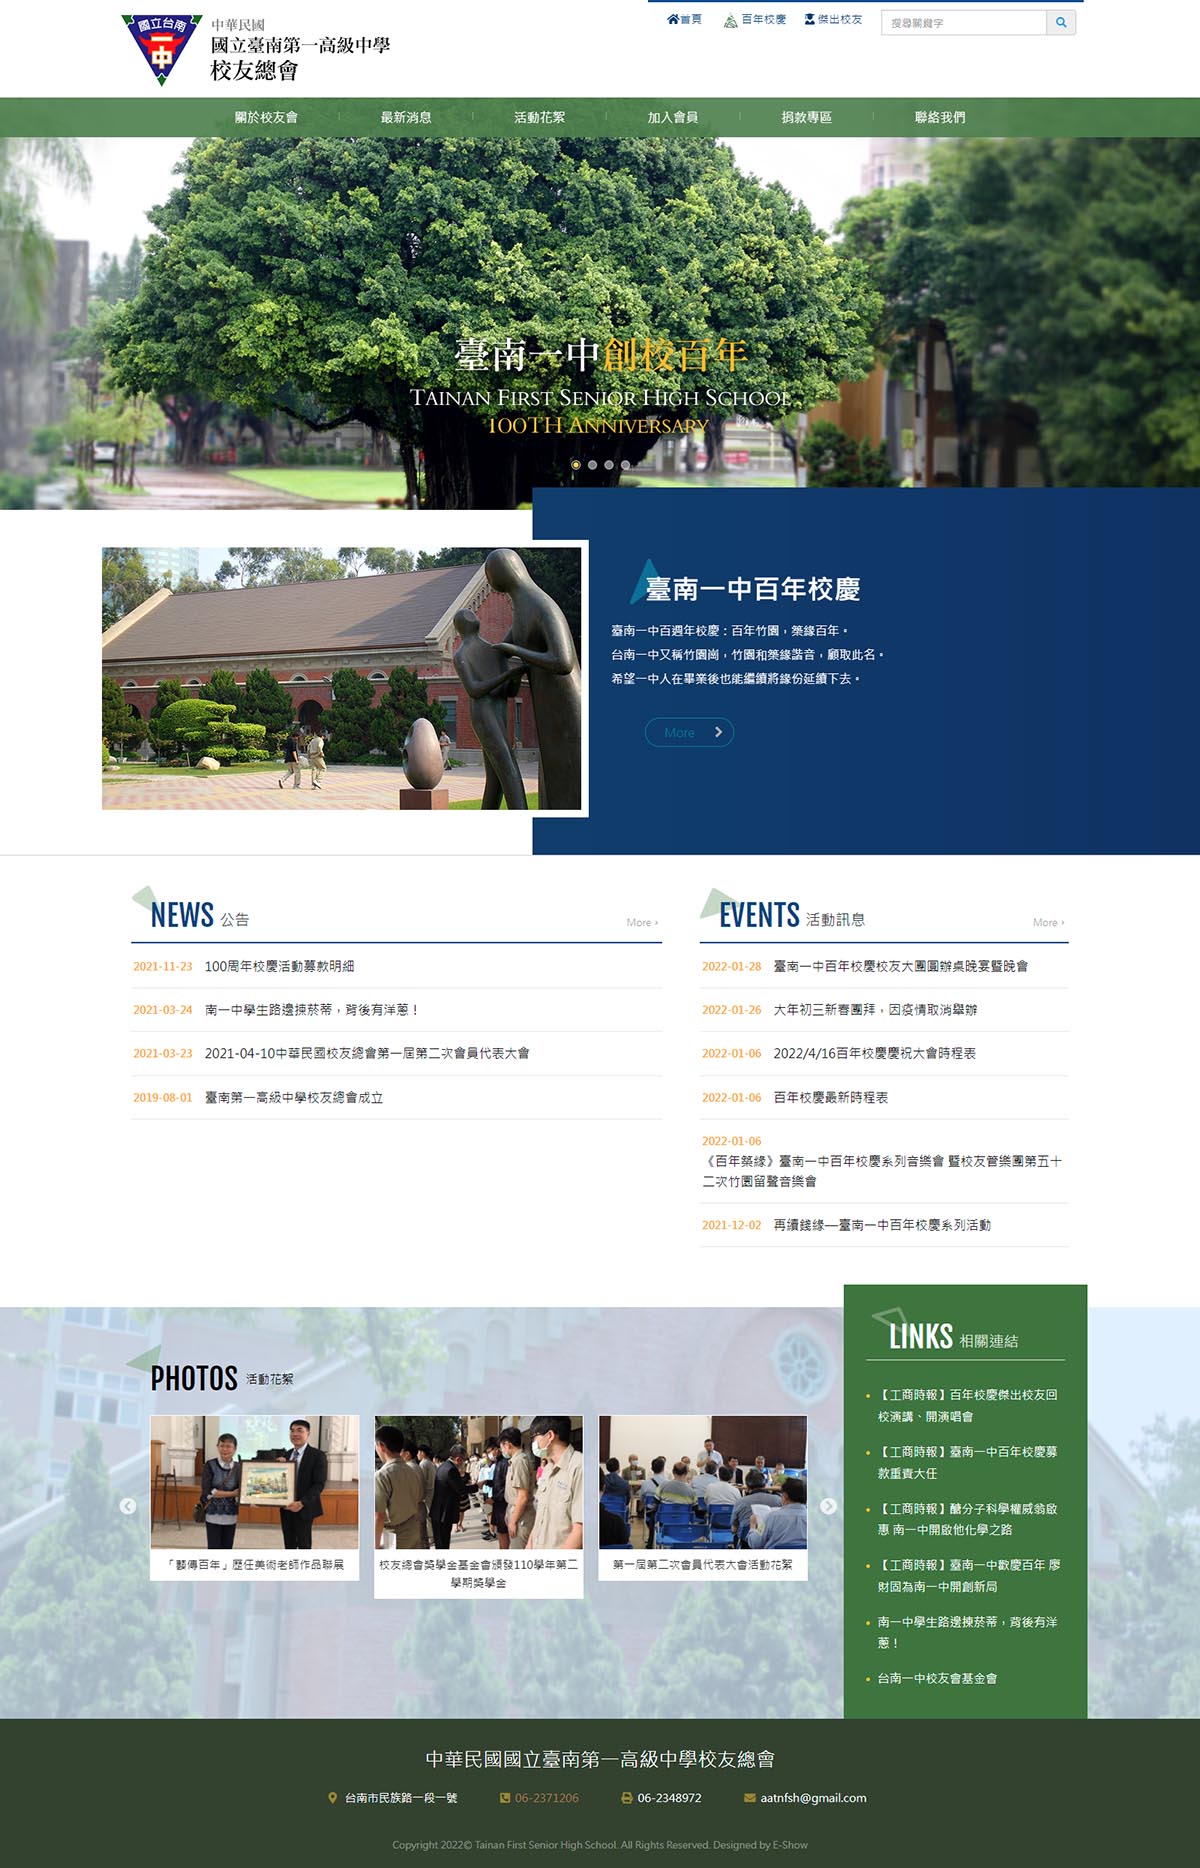 臺南第一高級中學校友總會 學校學院網站設計
